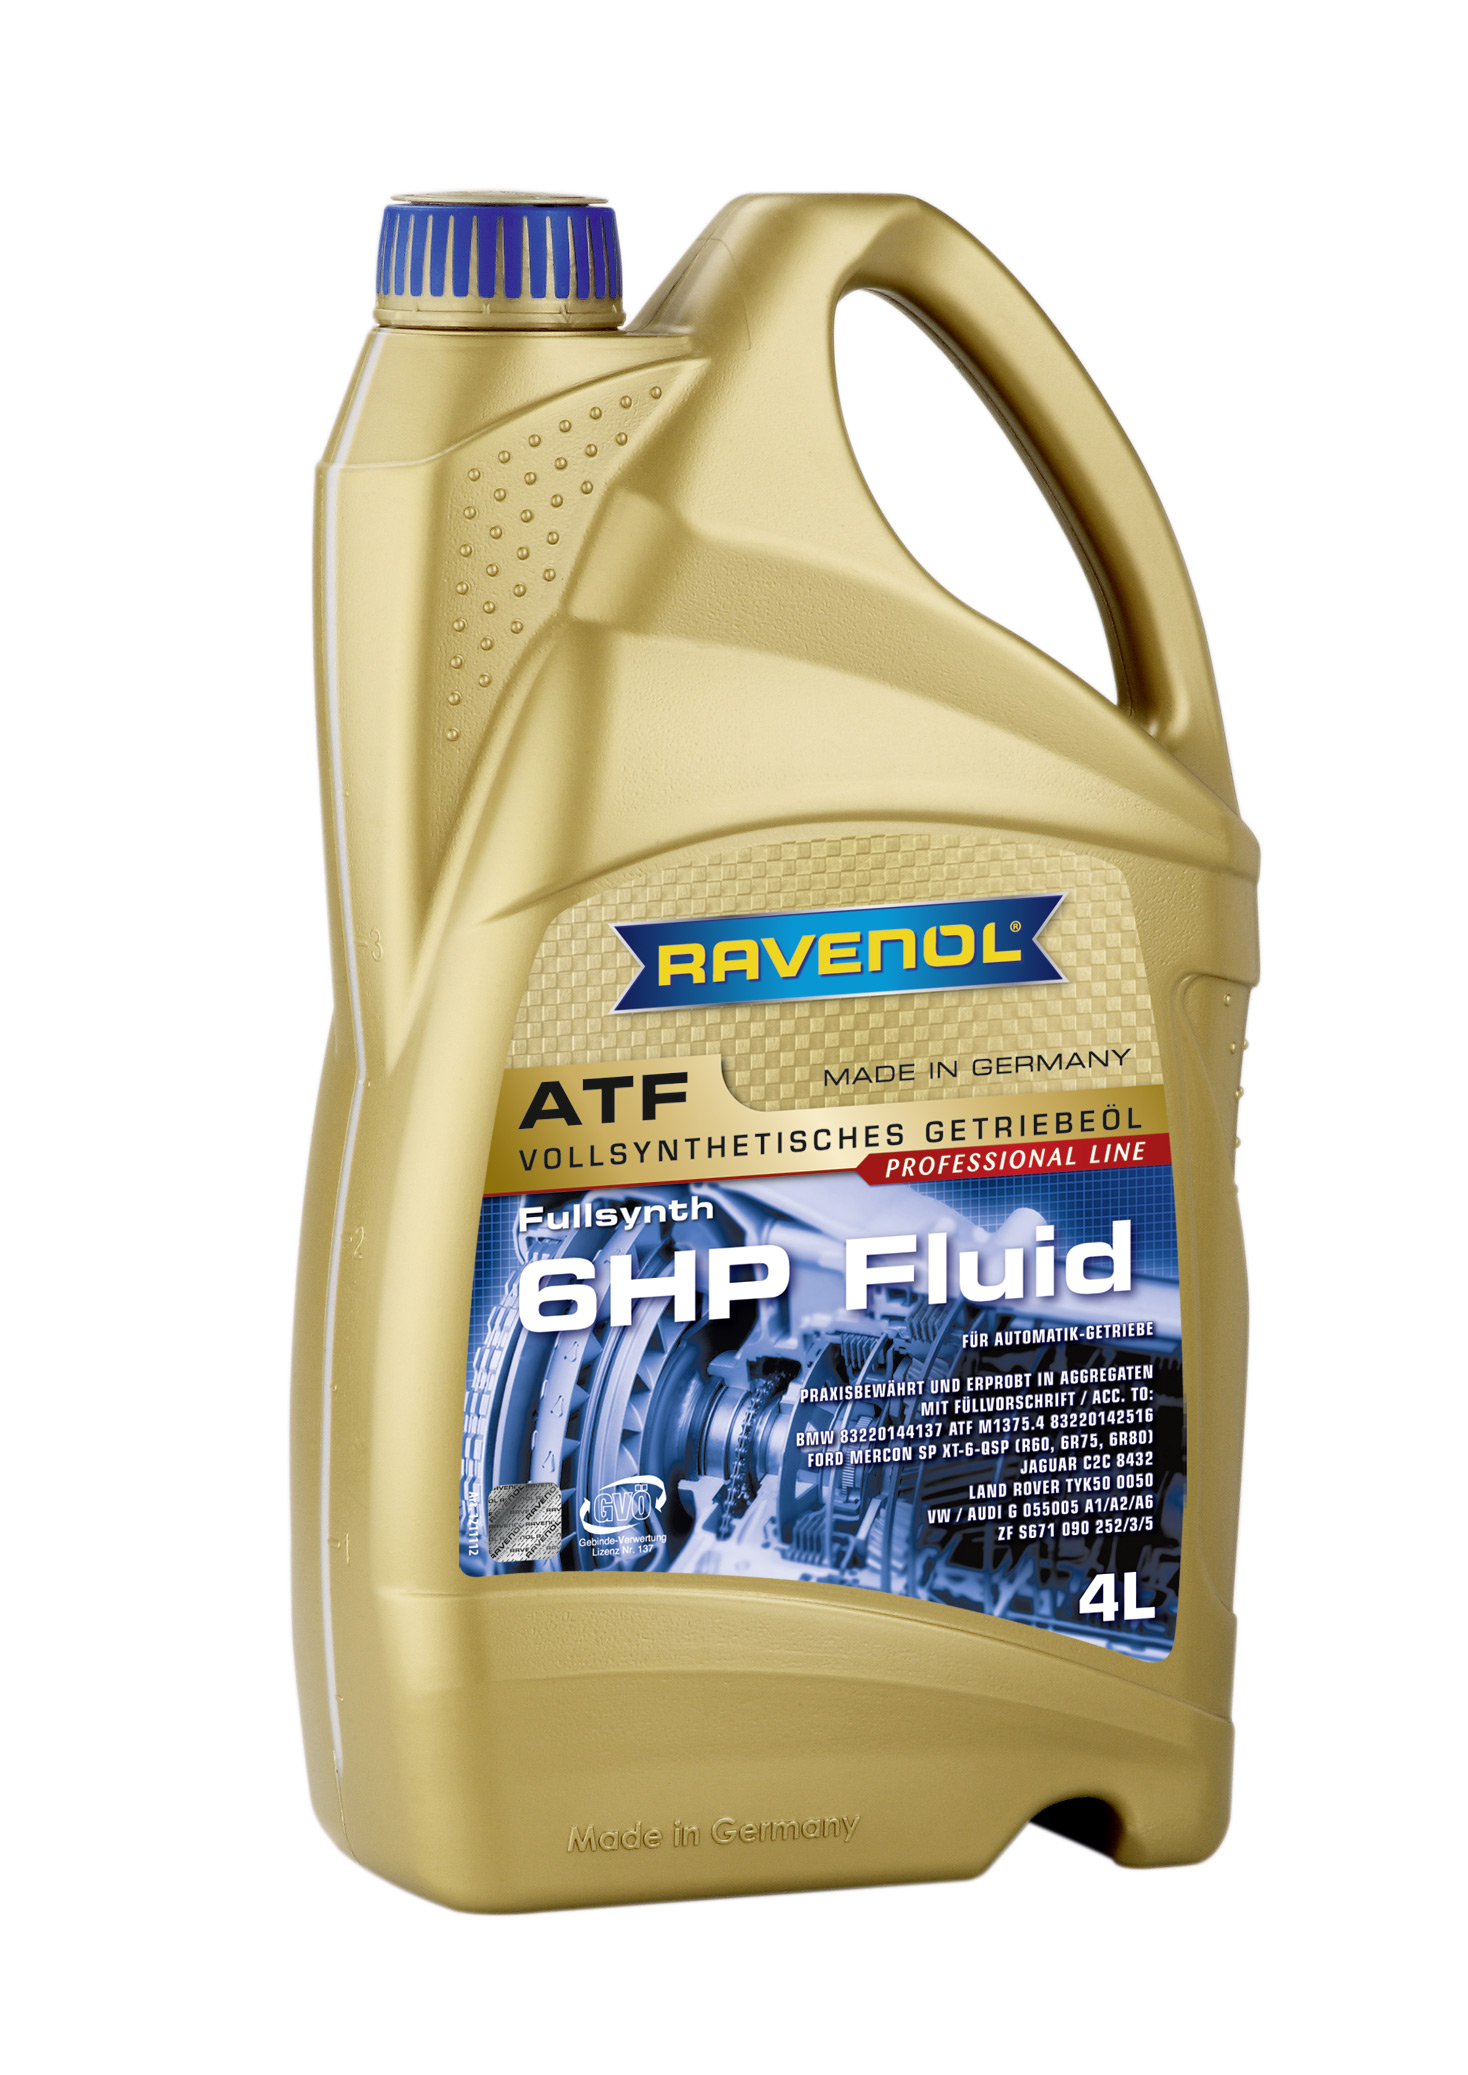 Ravenol ATF 6HP Fluid 4л масло трансмиссионное 4014835732797 - цены .